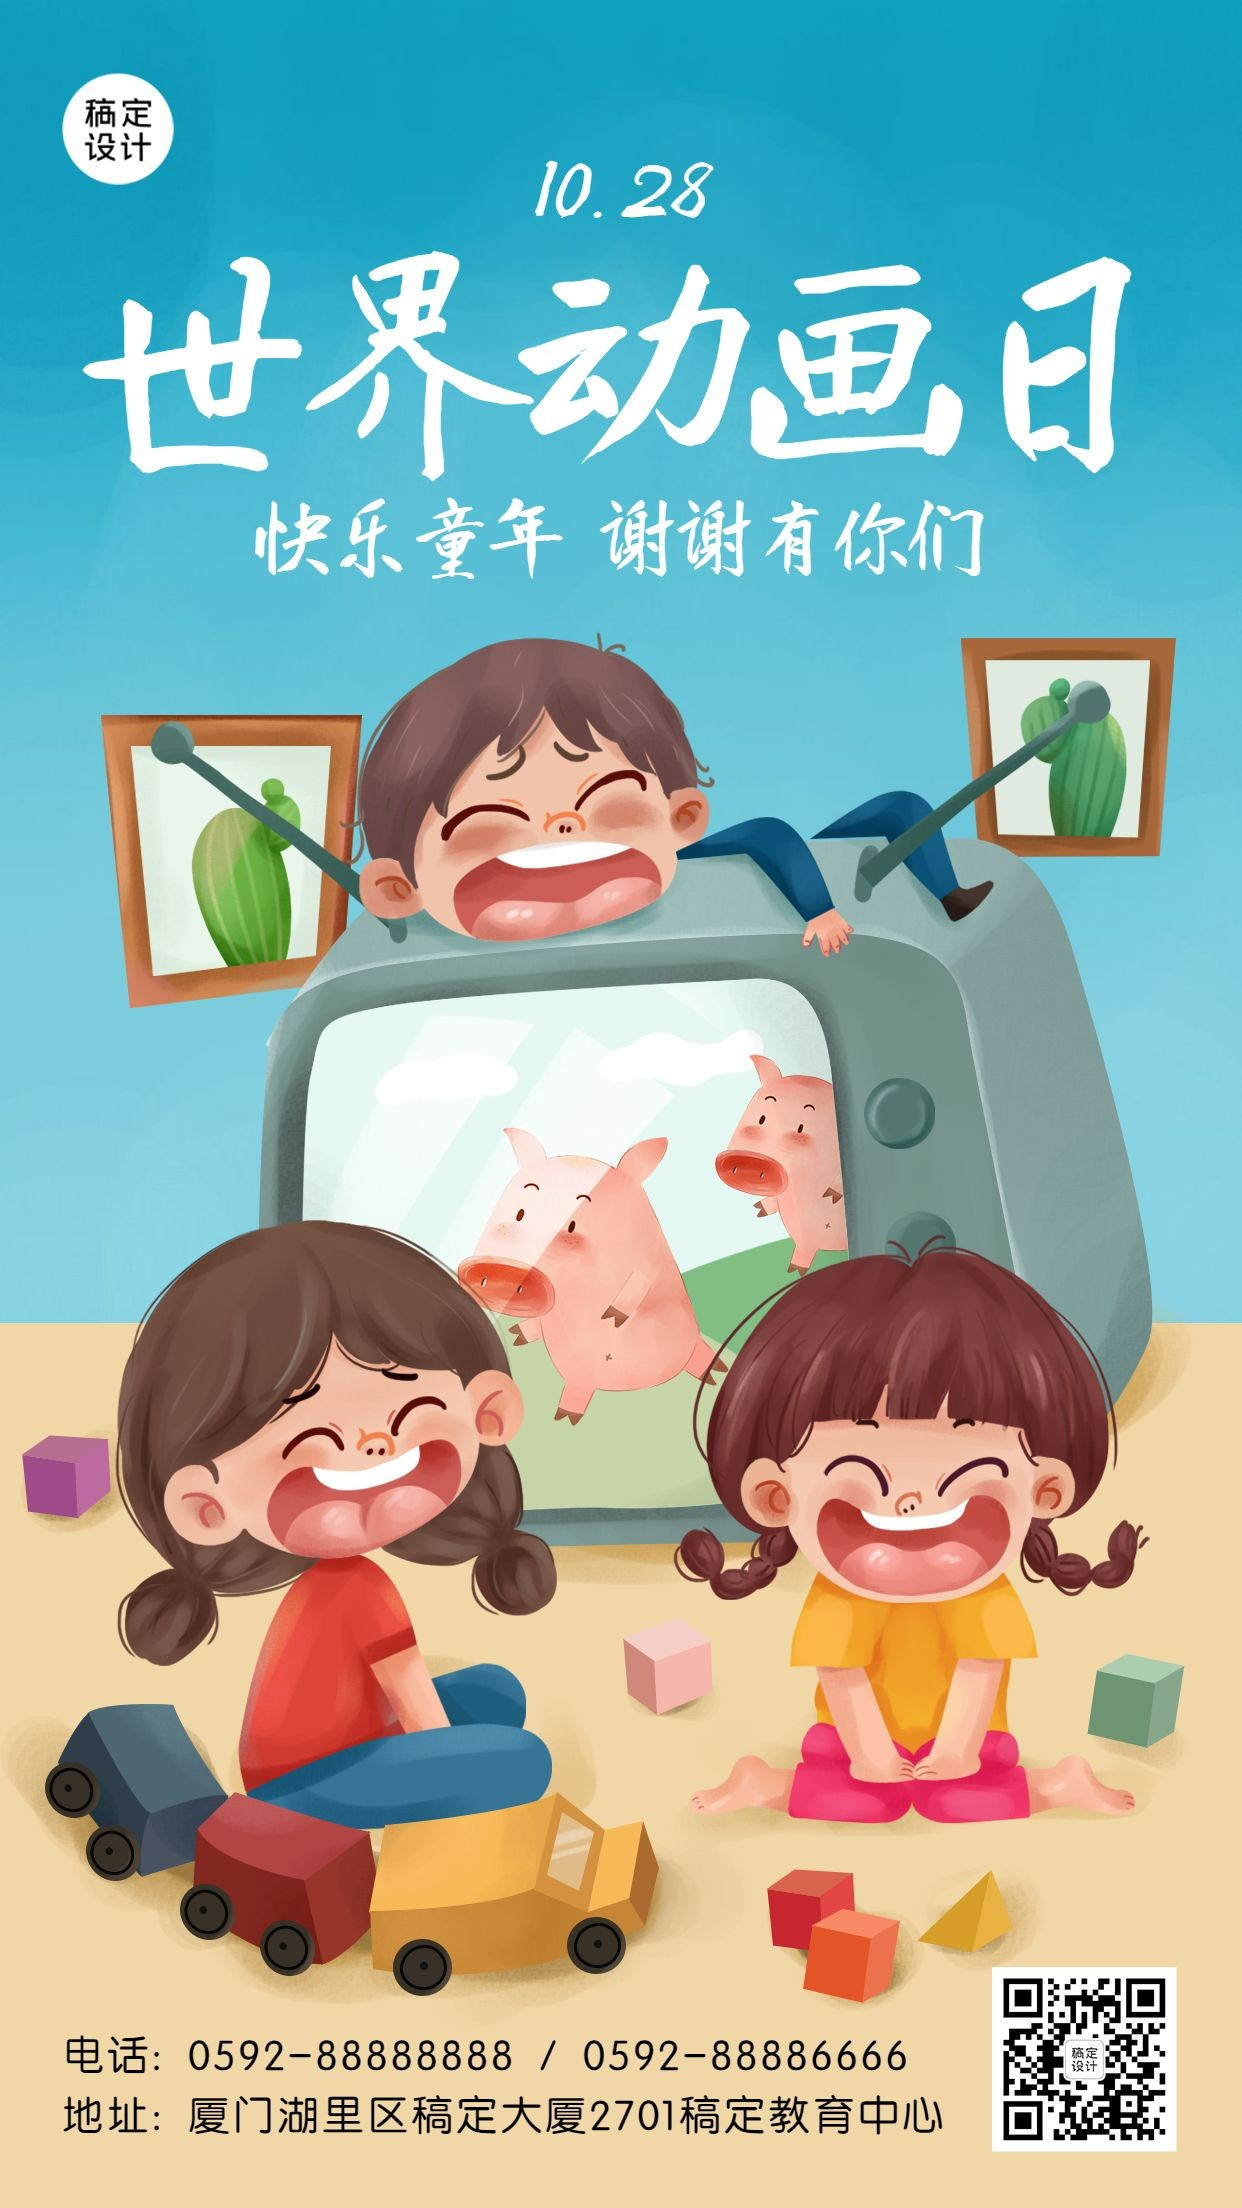 世界动画日幼儿园活动宣传海报预览效果